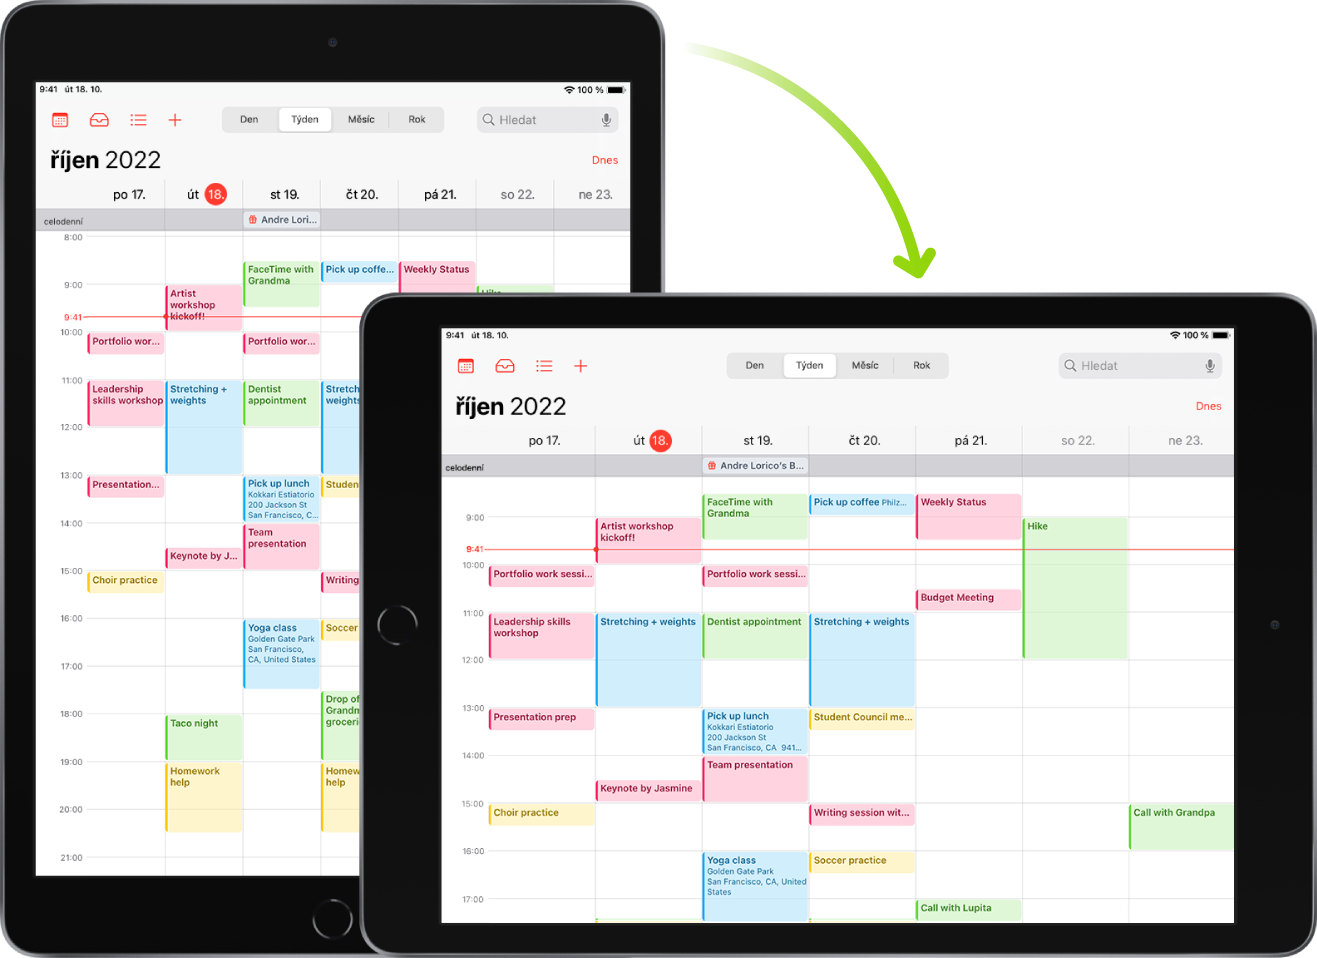 Na pozadí je vidět iPad s obrazovkou aplikace Kalendář v orientaci na výšku; v popředí je tentýž iPad, ale otočený tak, aby se obrazovka aplikace Kalendář zobrazovala na šířku